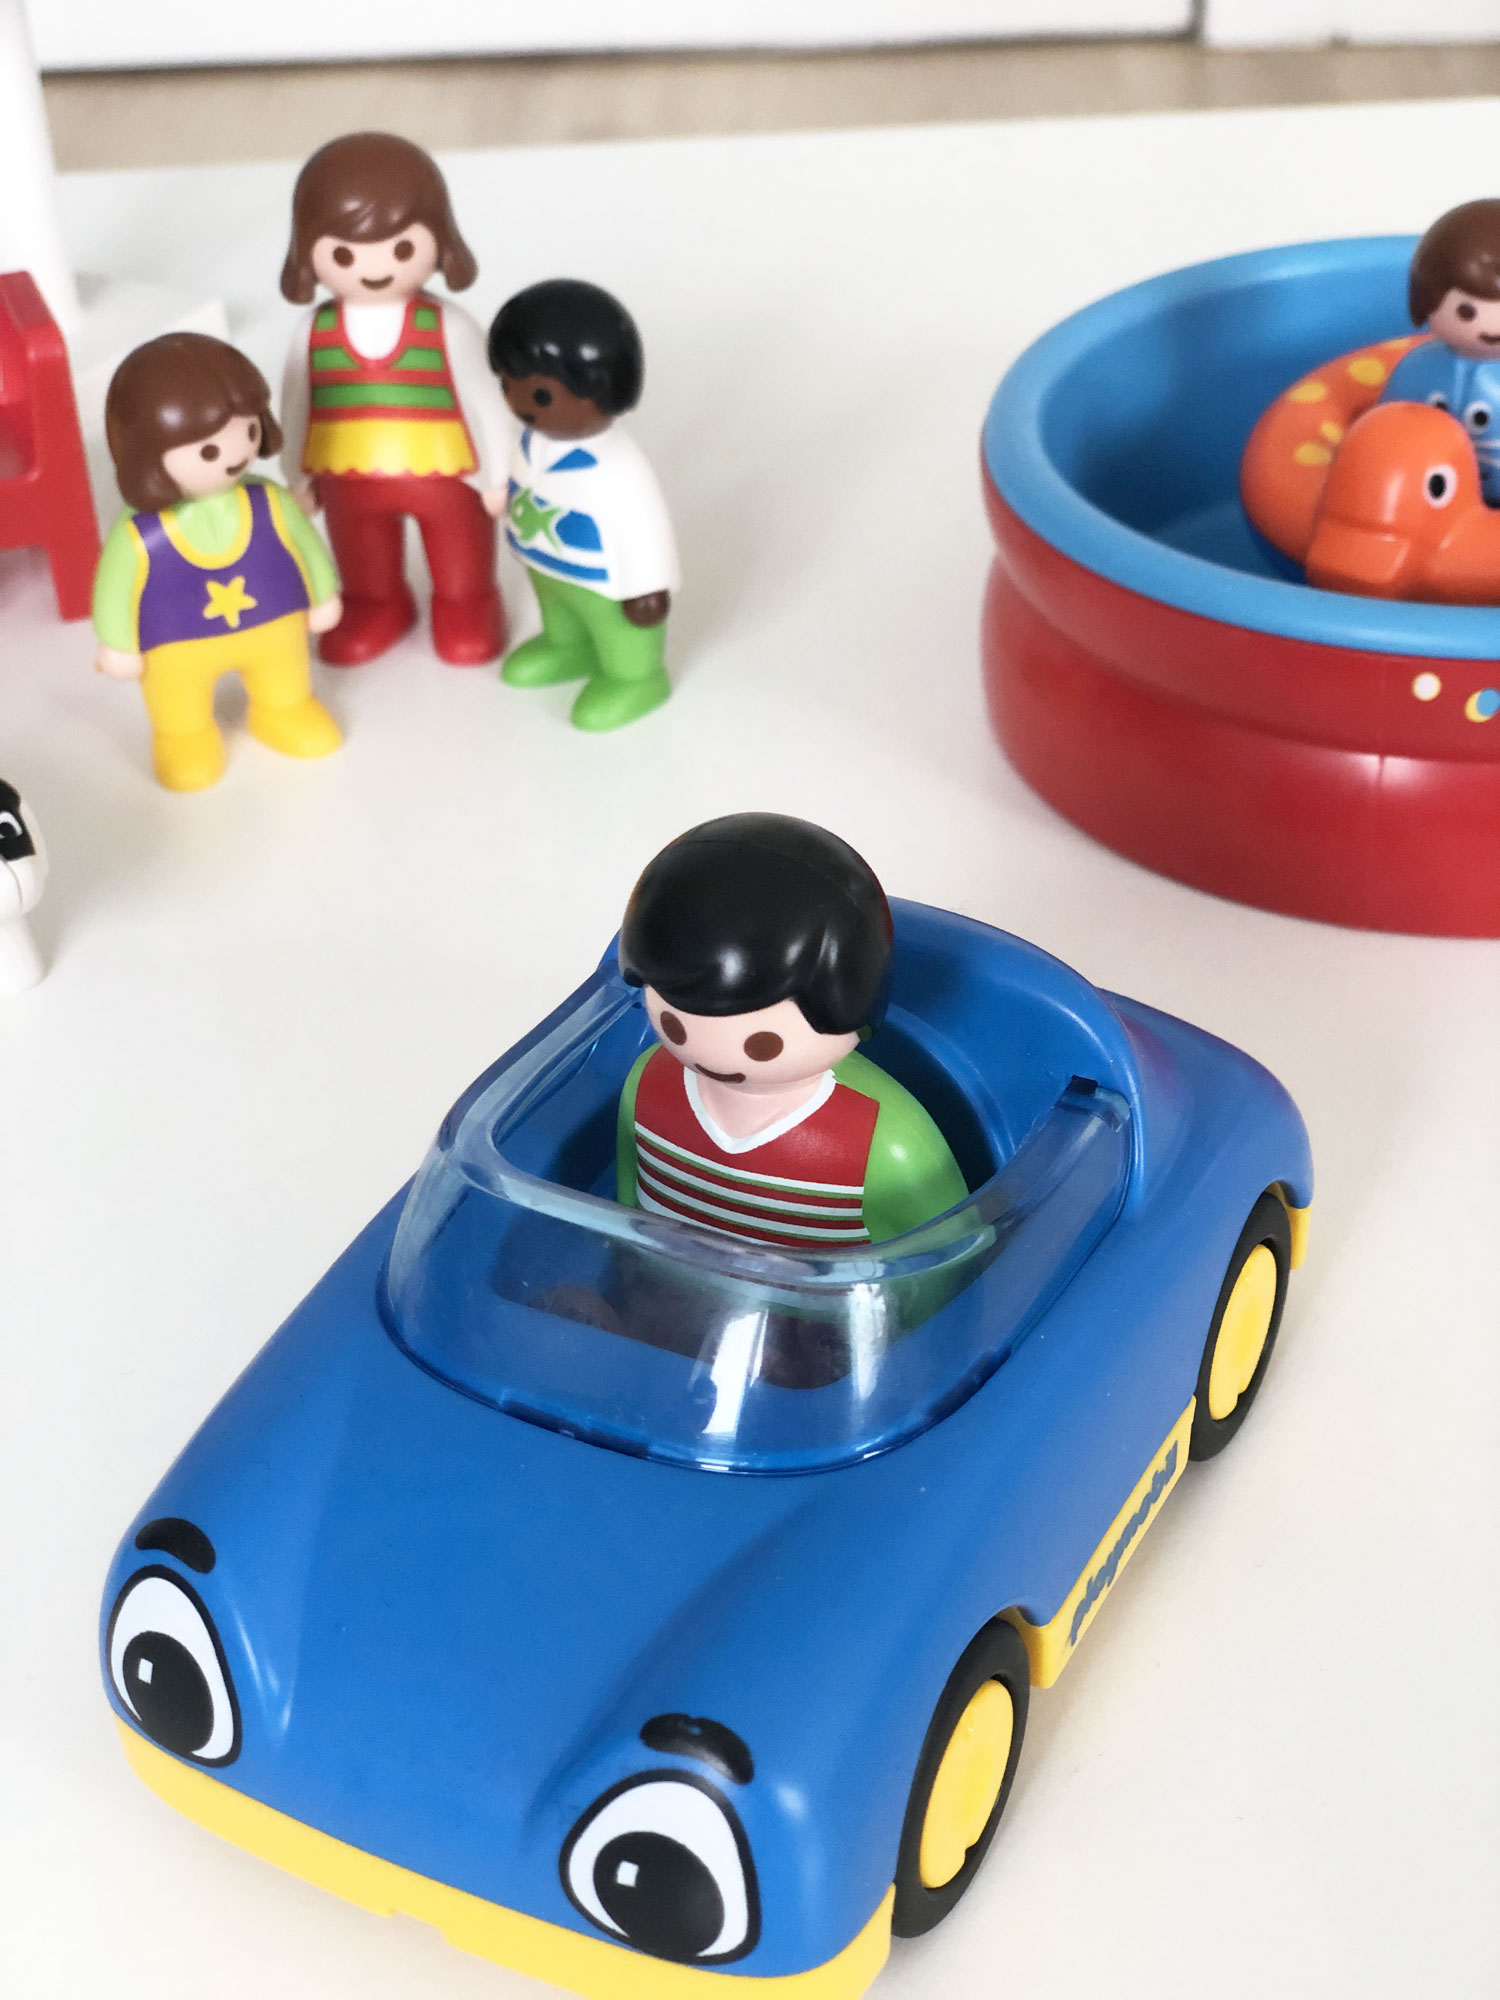 Playmobil figure in car